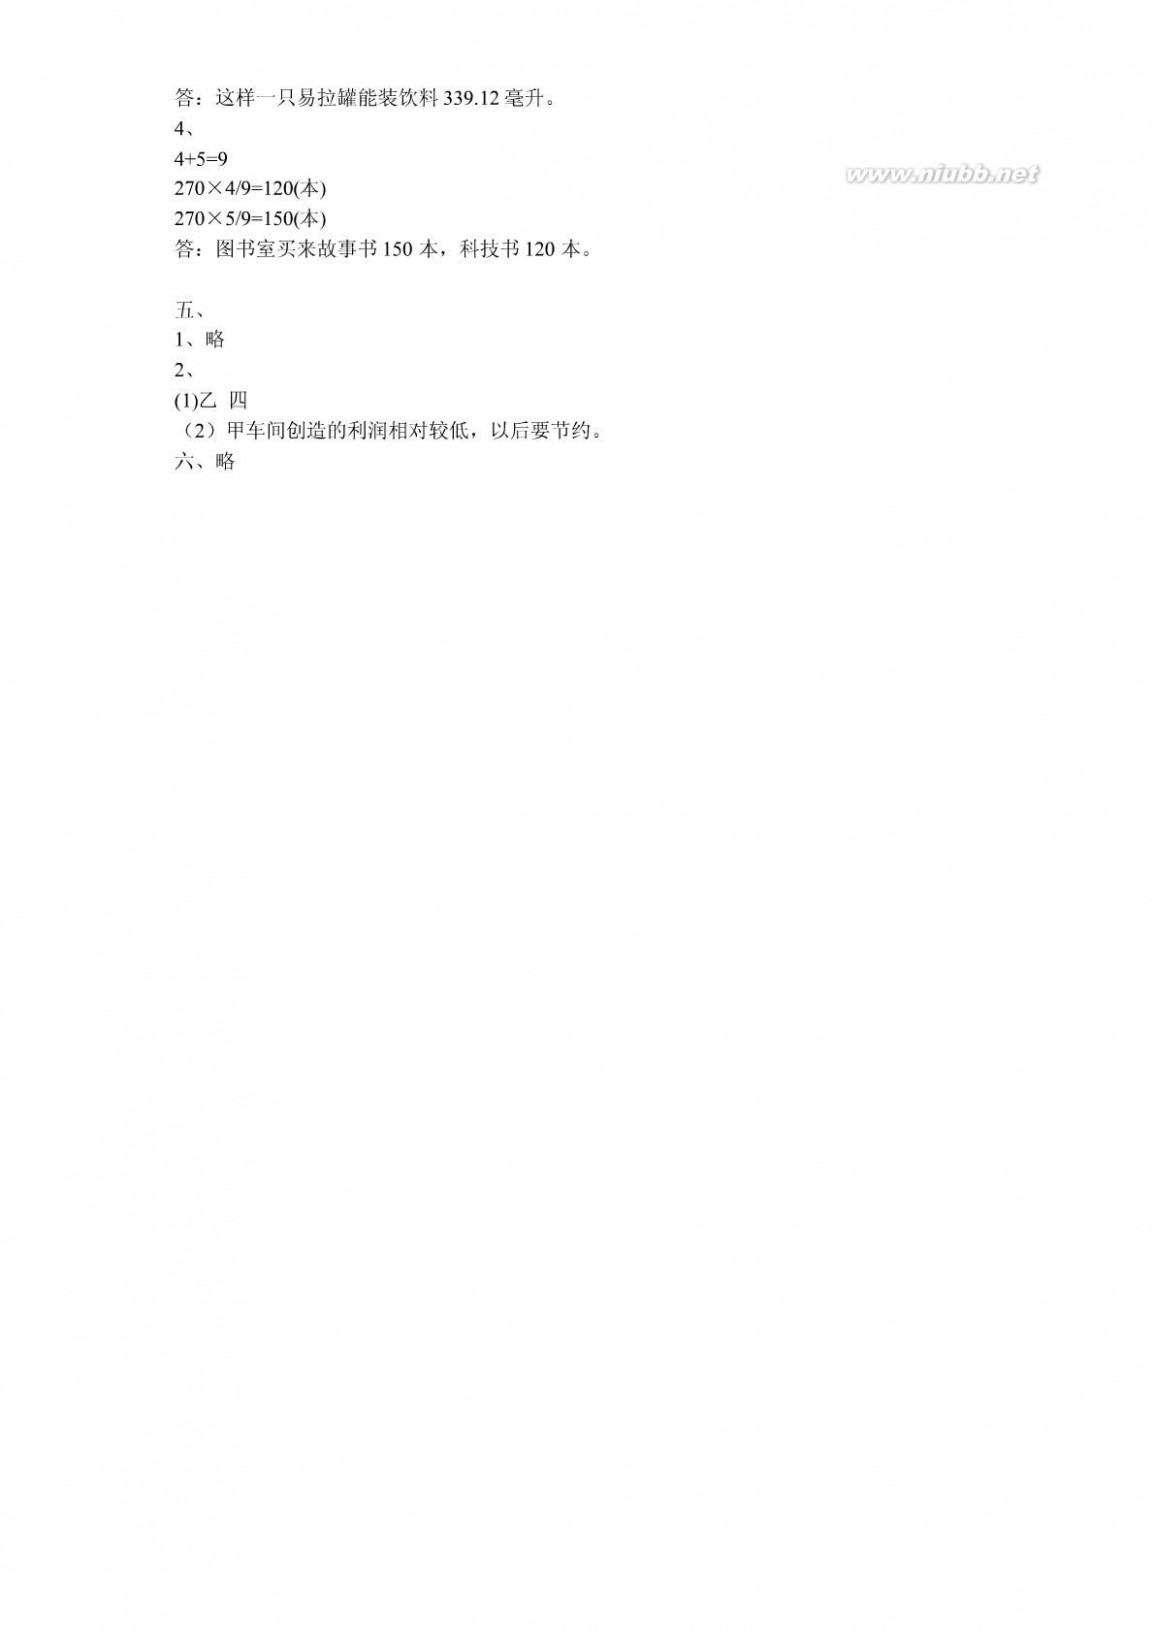 苏教版六年级下册数学补充习题答案 小学数学补充习题(课标苏教版六年级下册)答案